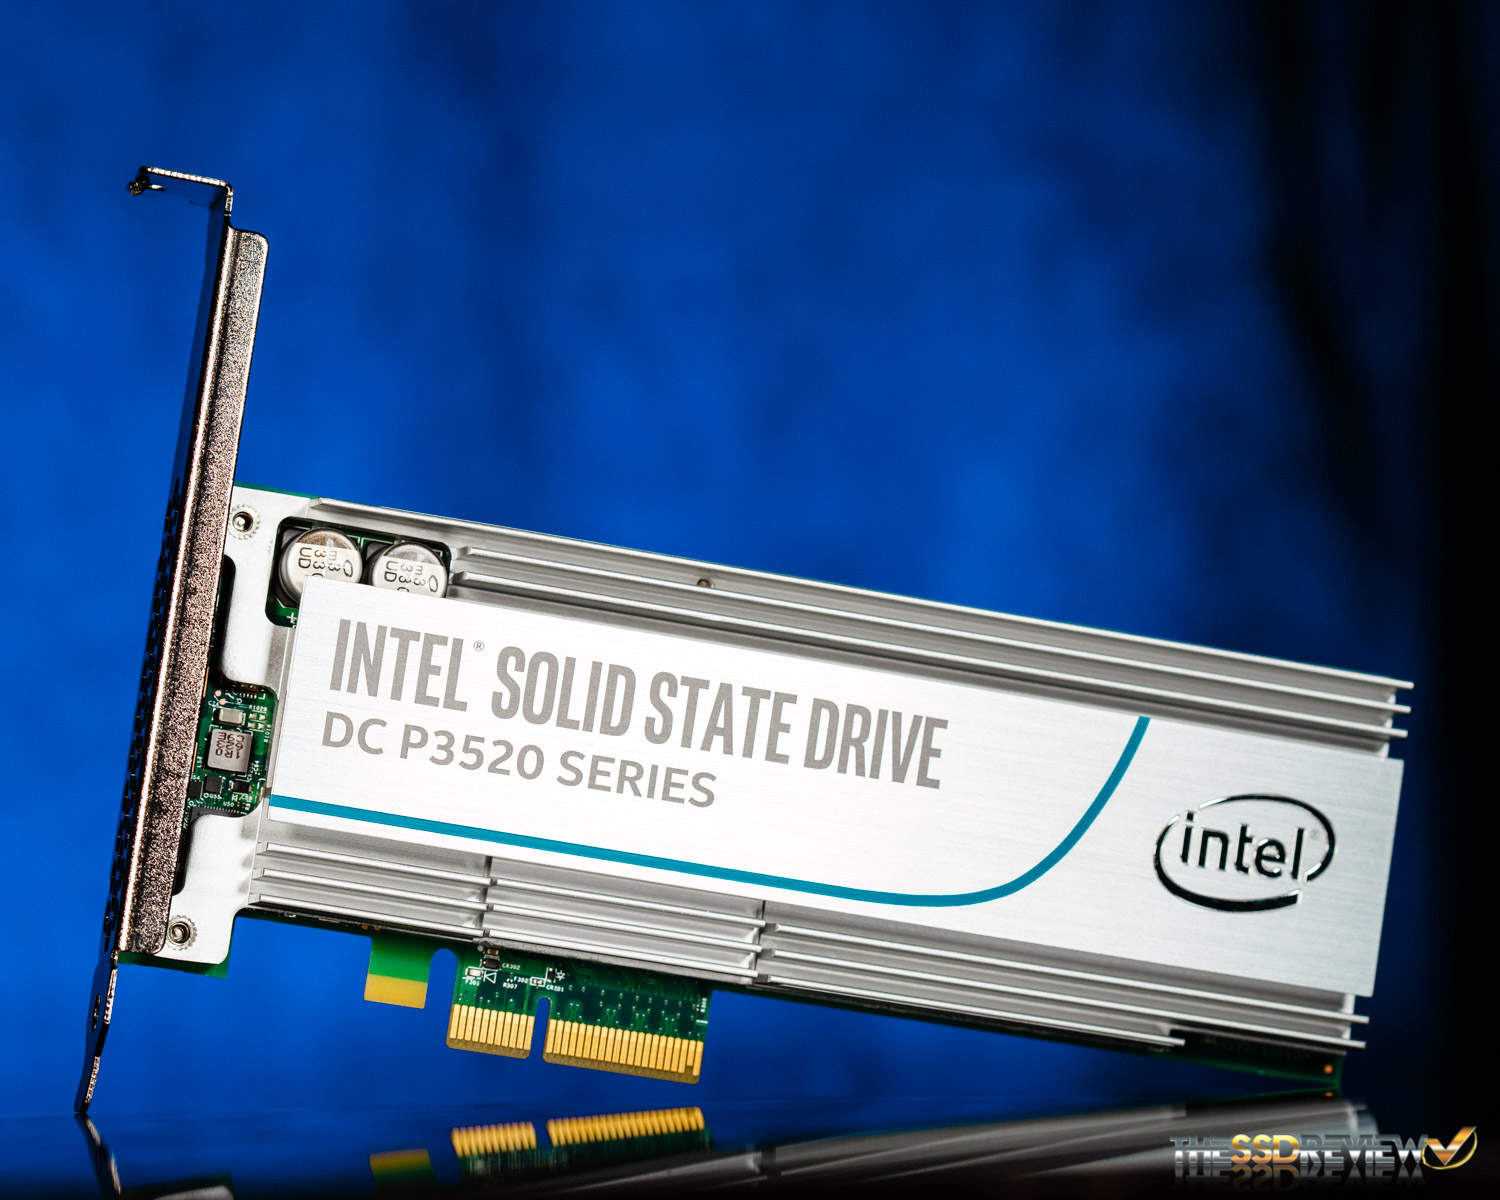 Intel DC P3520 Enterprise NVMe SSD Review (1.2TB) - With 3D NAND 